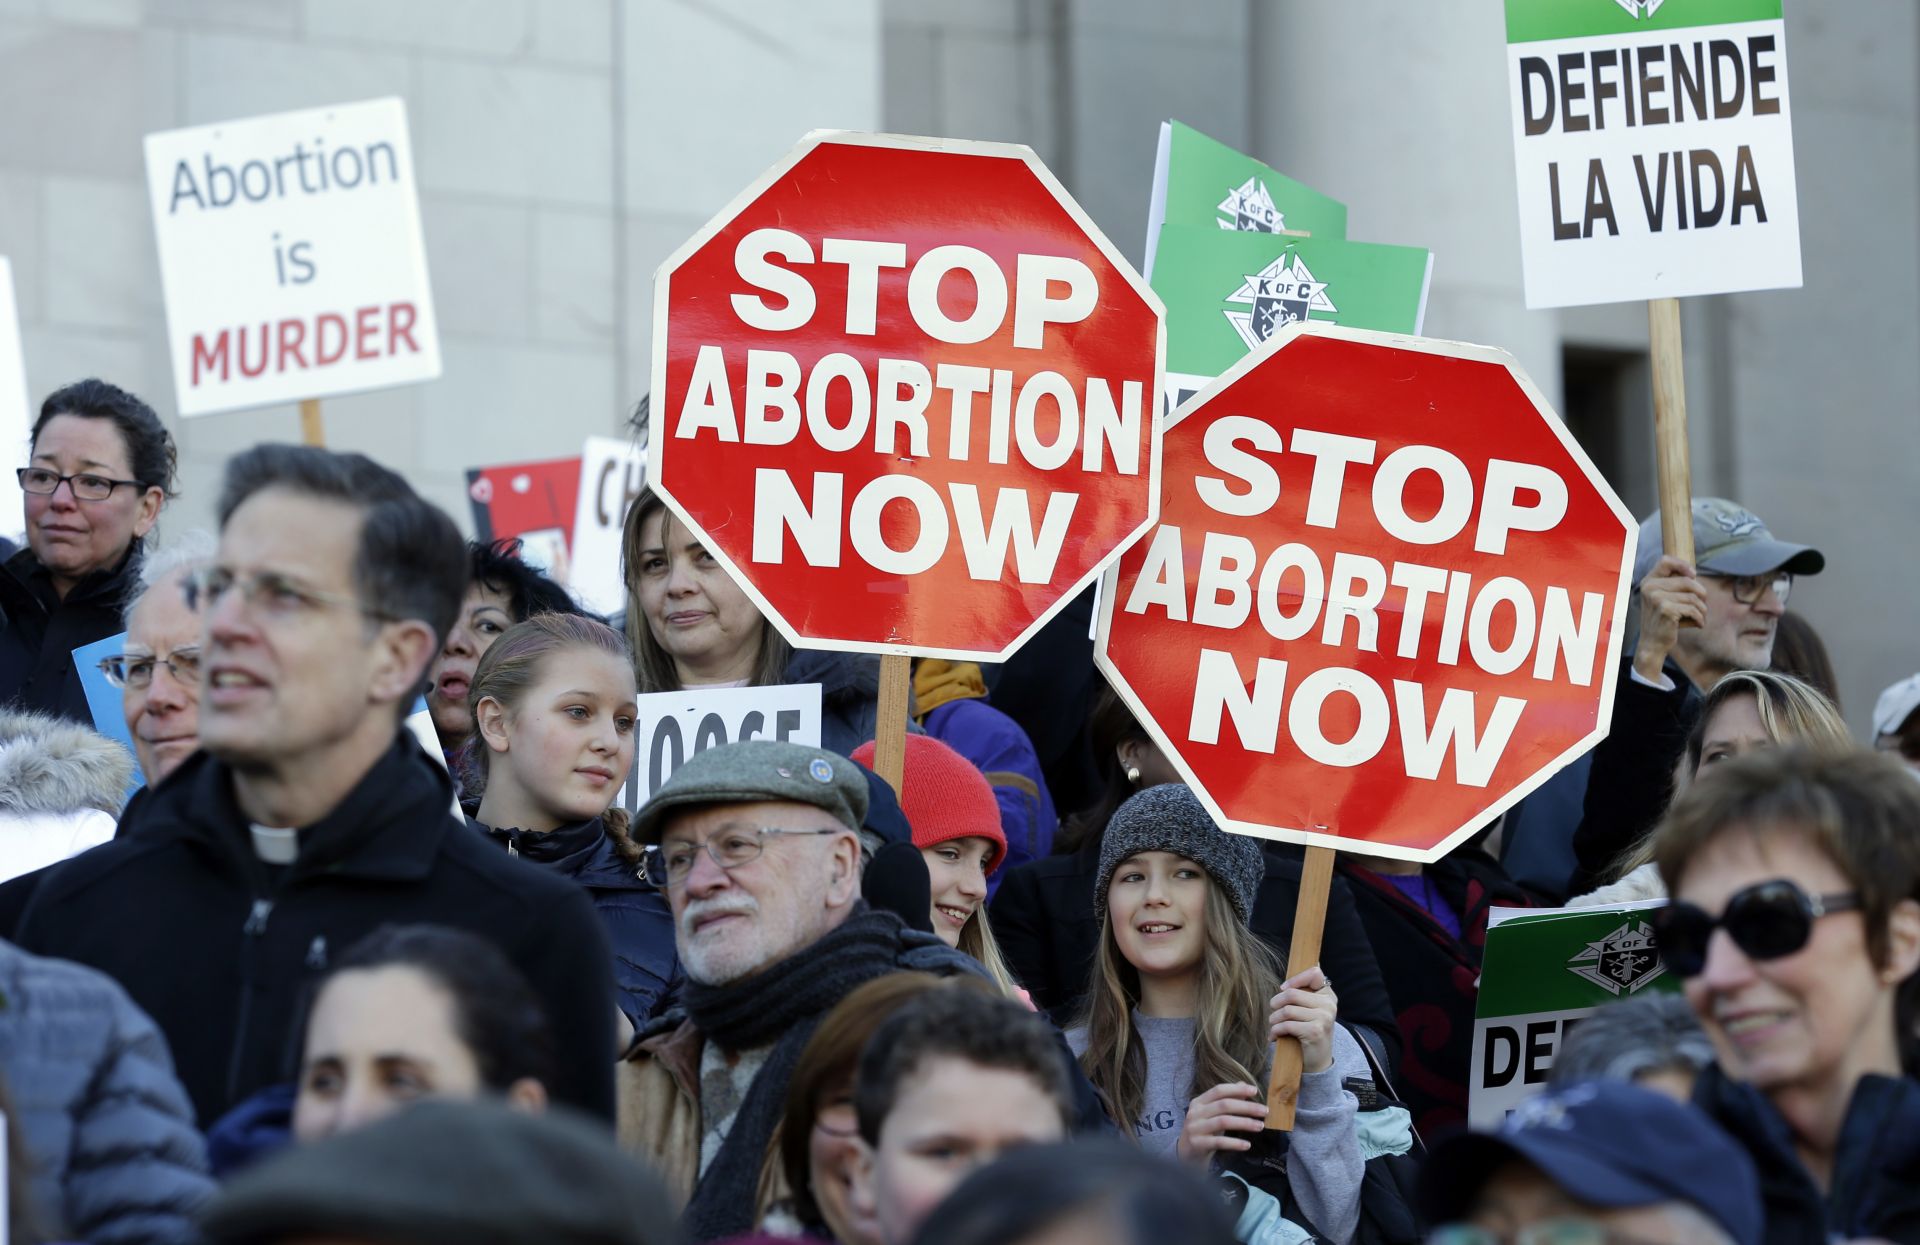 Проучванията сочат, че привържениците на по-лесно разрешаване на абортите са много повече от противниците